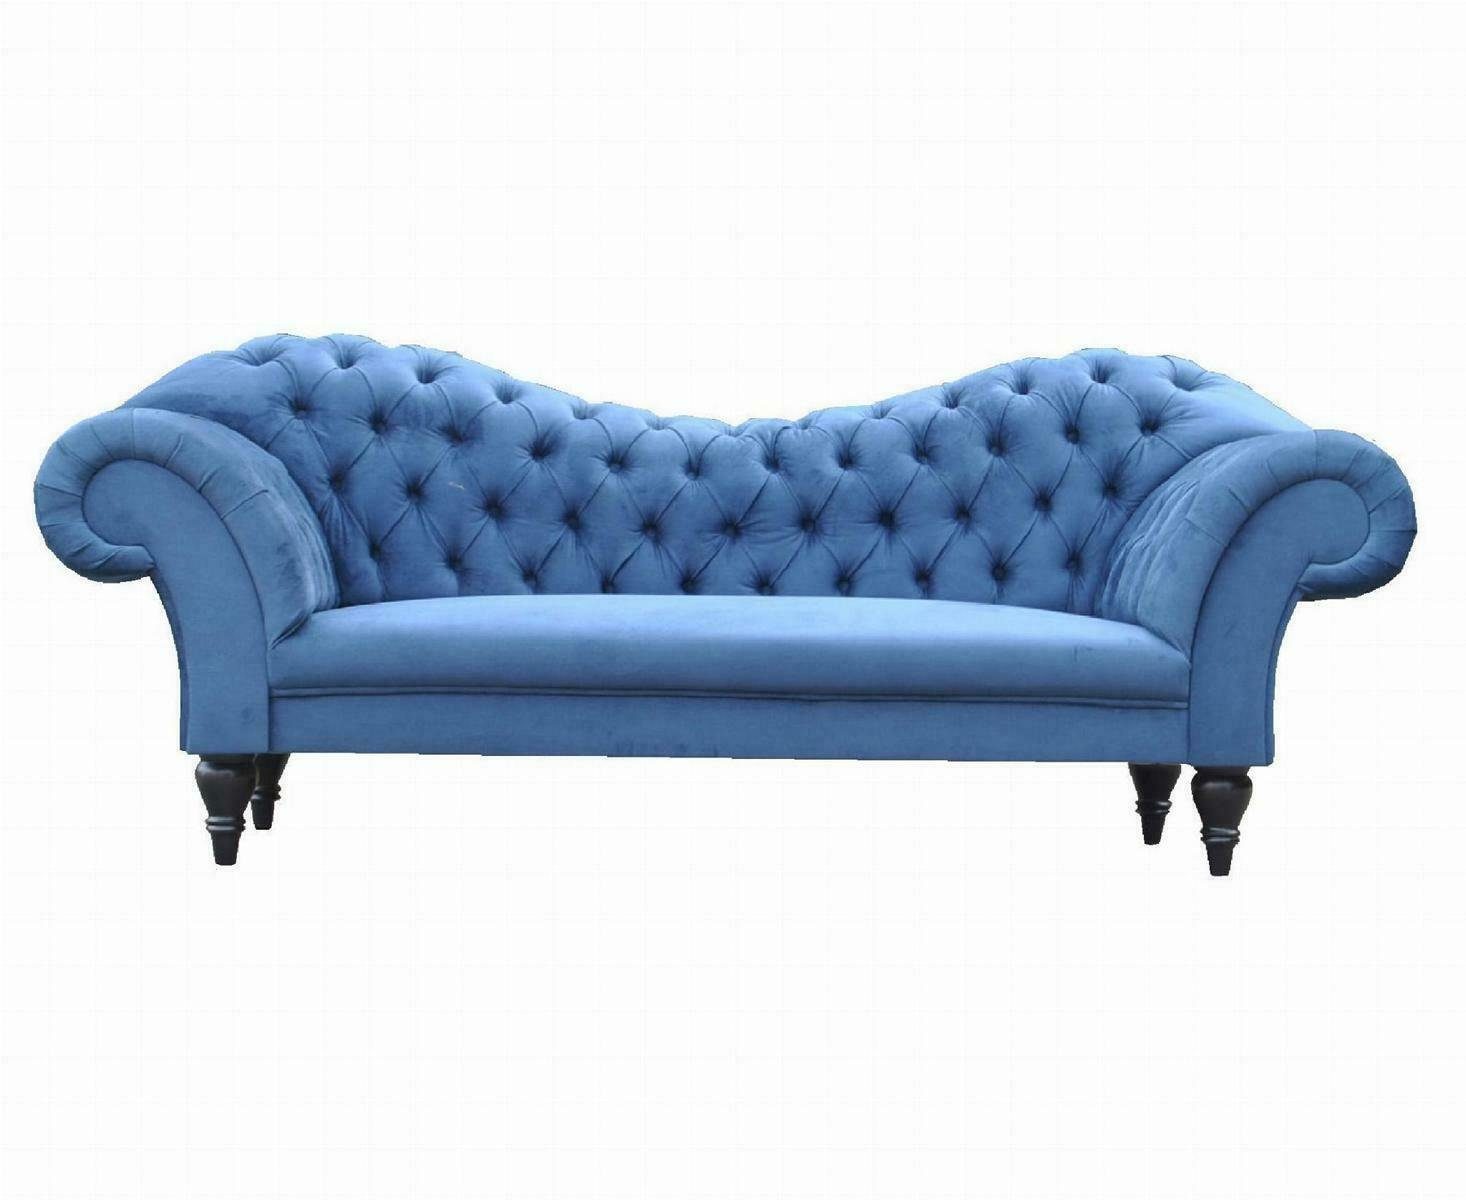 JVmoebel 3-Sitzer Chesterfield Dreisitzer Design Europe in Sofa 3 Made Sitzer, Sitzer Textil